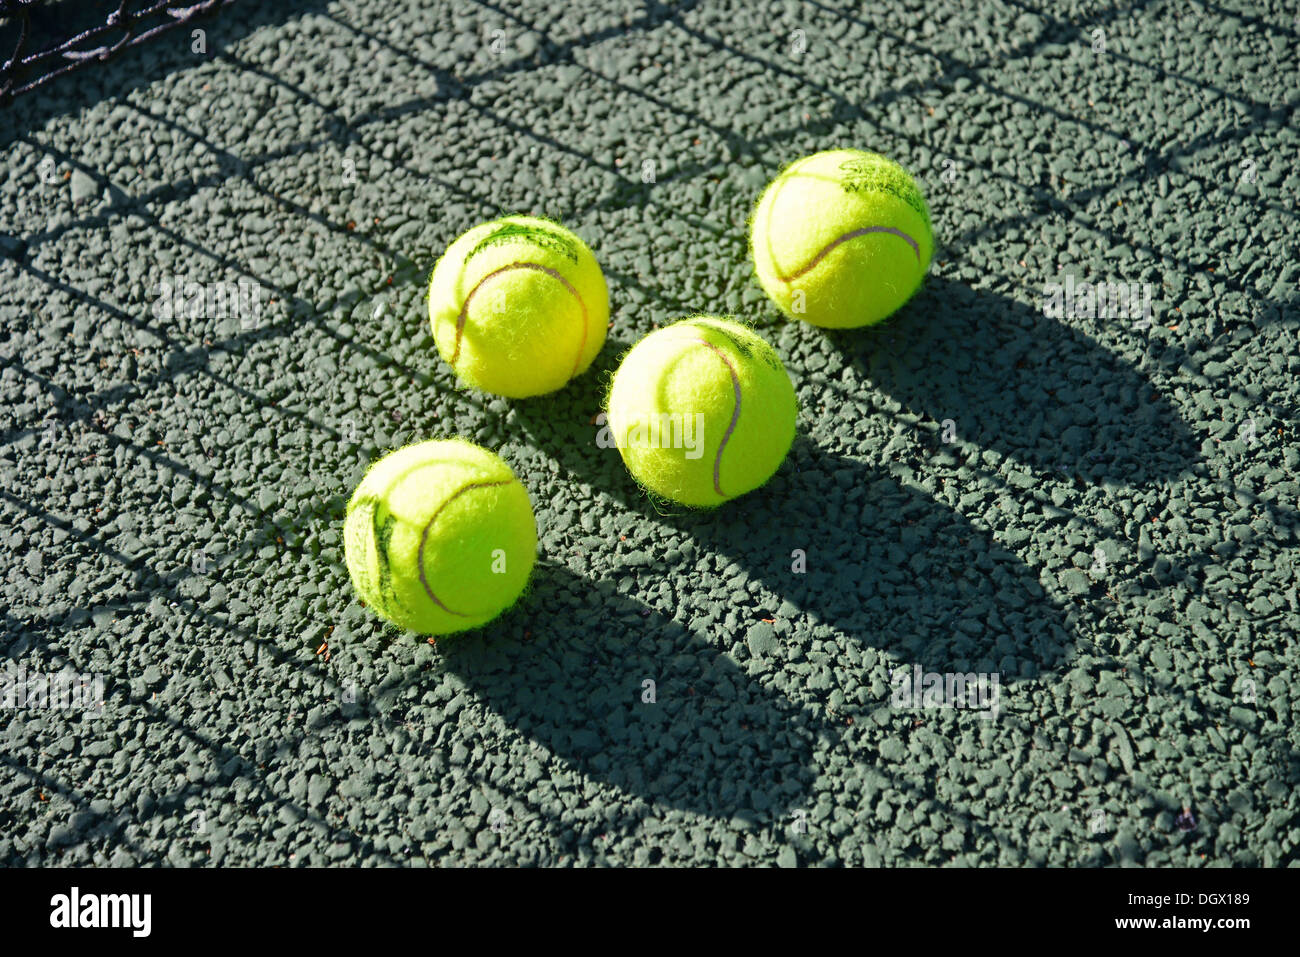 Les balles de tennis sur le court, Royal Ascot Tennis Club, Ascot, Berkshire, Angleterre, Royaume-Uni Banque D'Images